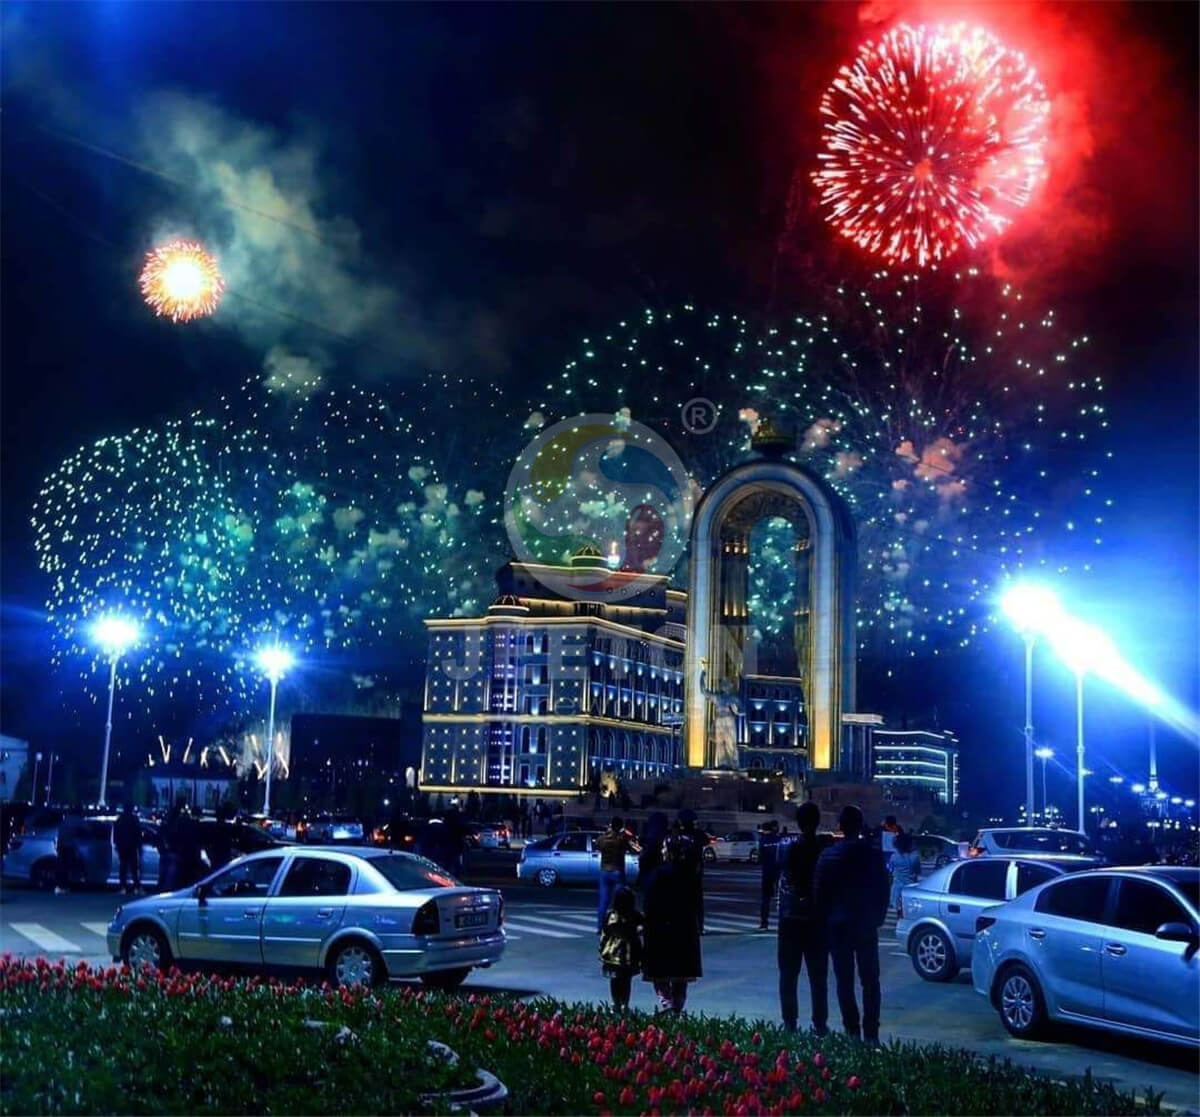 Tajikistan Nawrooz Festival Fireworks Show